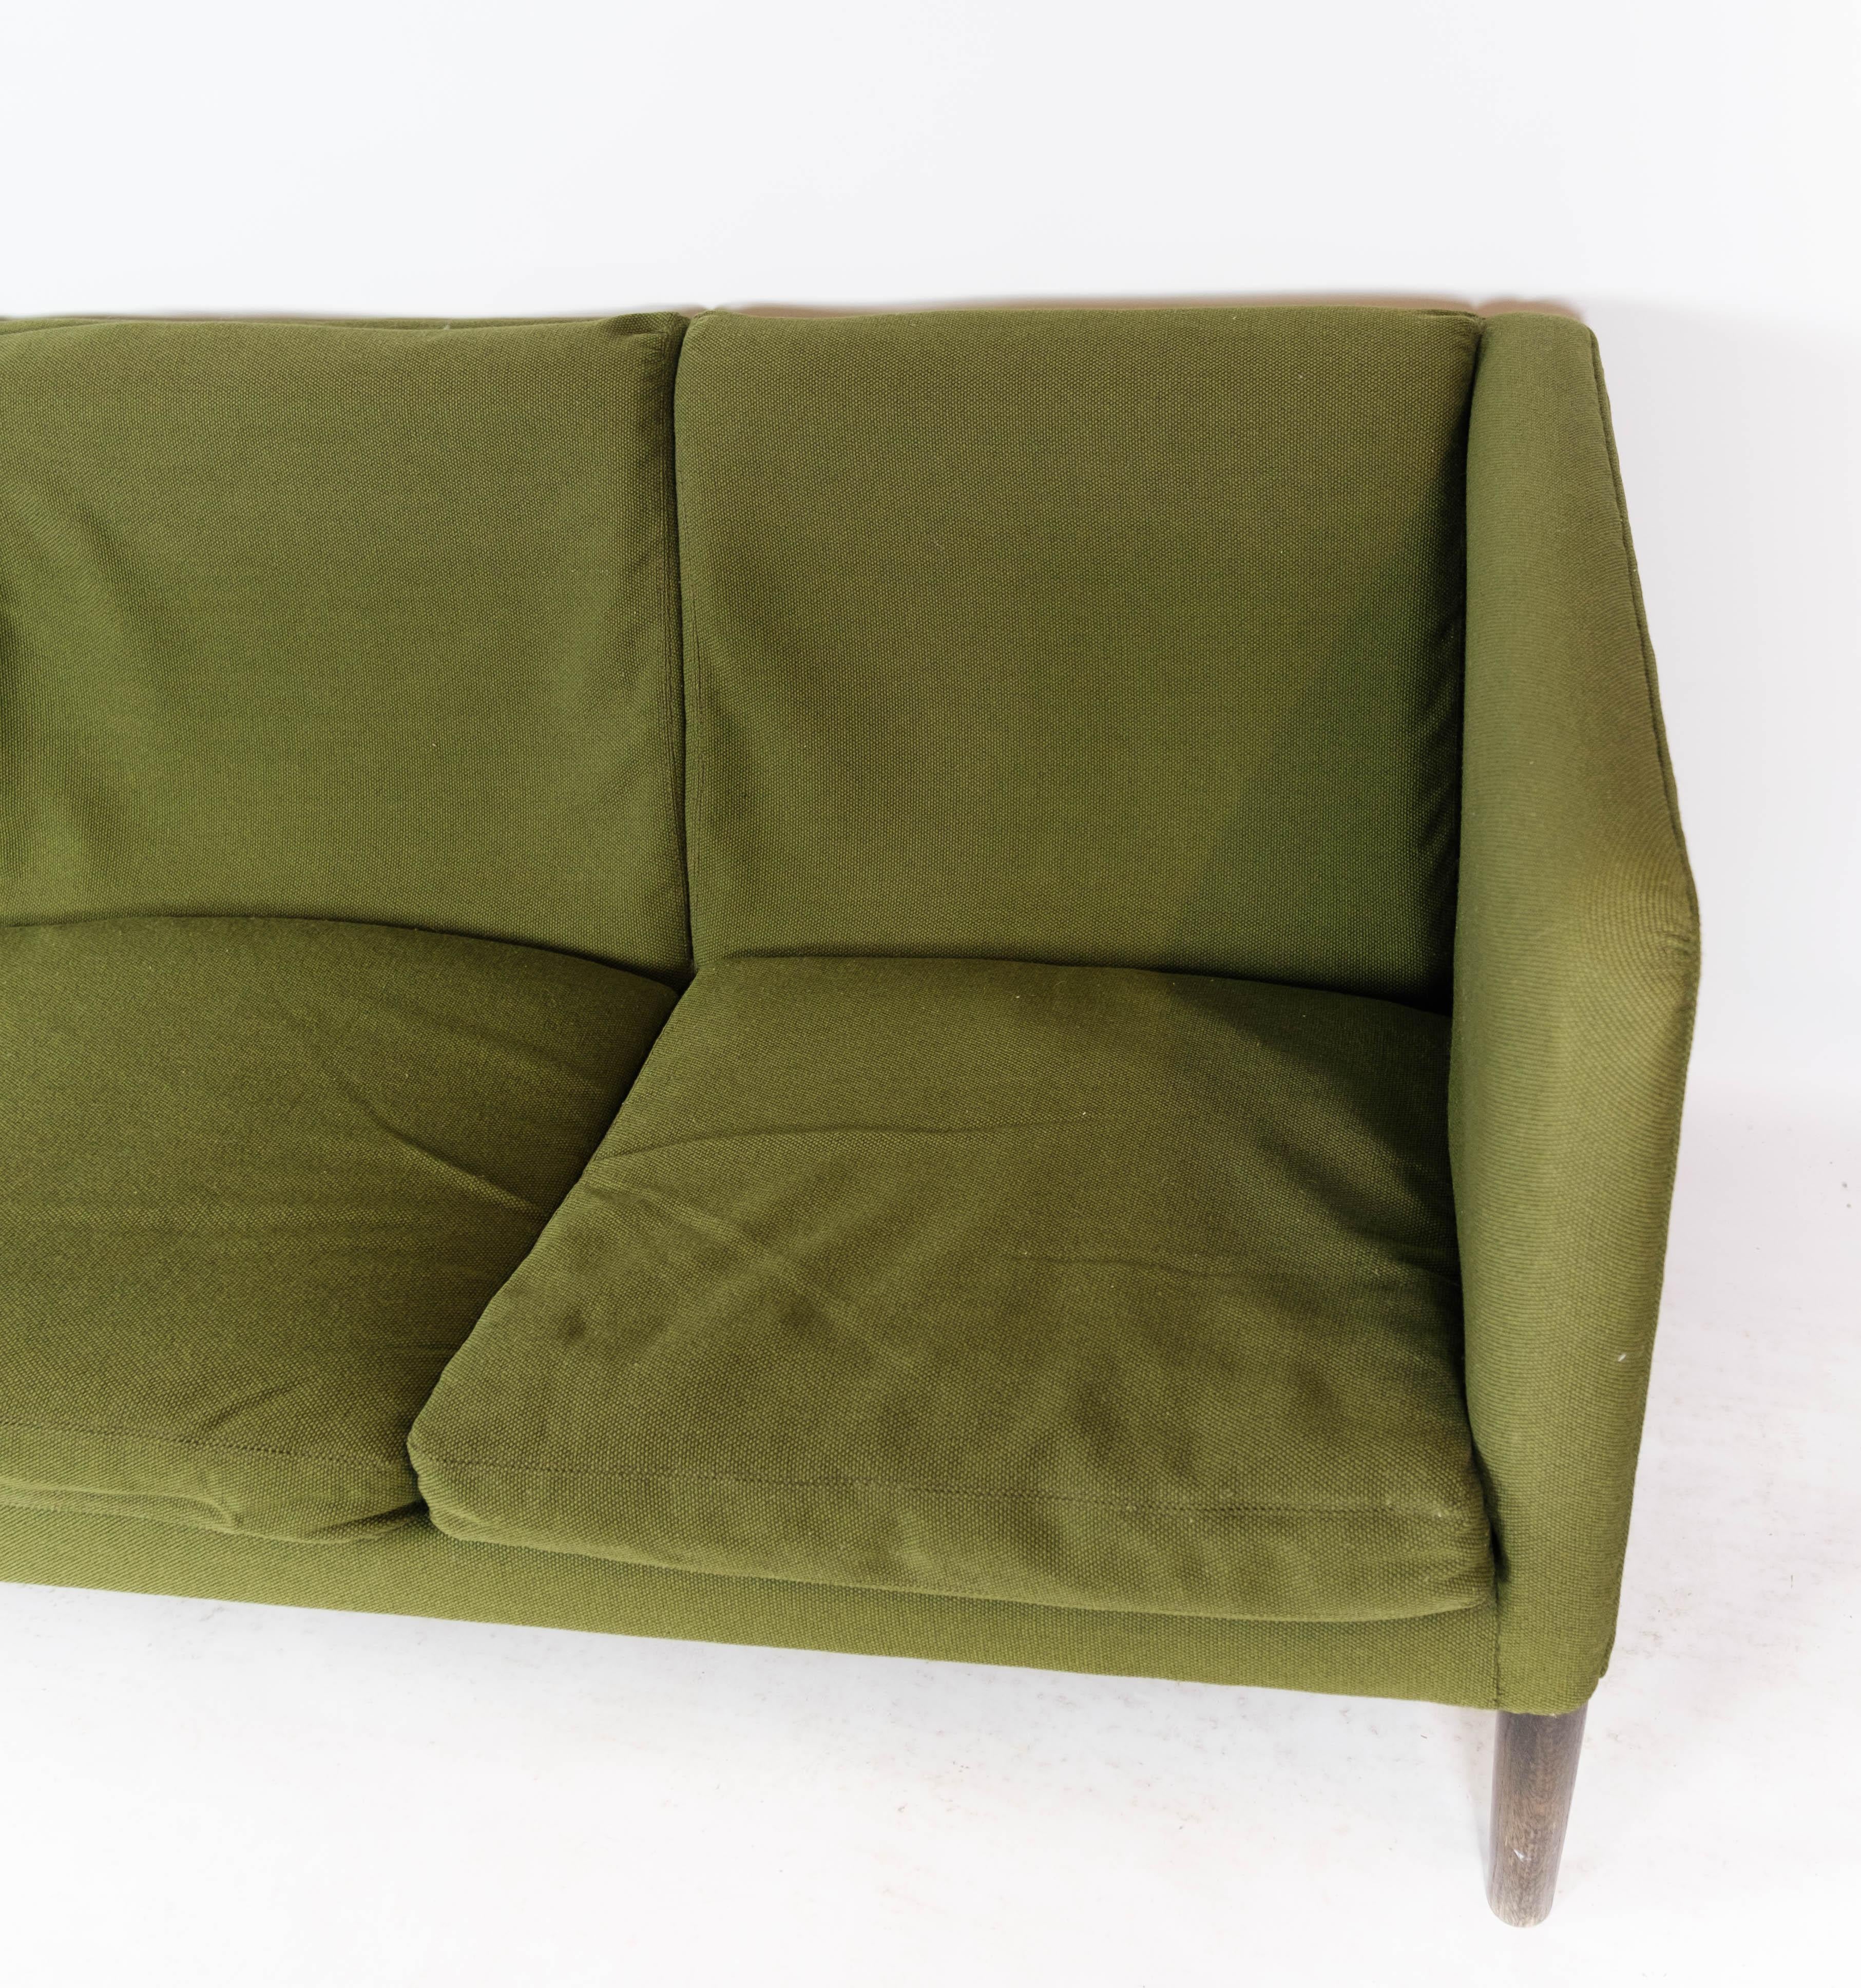 Le canapé trois places, modèle AP 18S, revêtu d'un tissu de laine vert et doté de pieds en bois foncé, a été conçu par l'architecte danois Hans J. Wegner en 1960. Wegner, connu pour sa contribution unique au design du mobilier danois, a créé ce